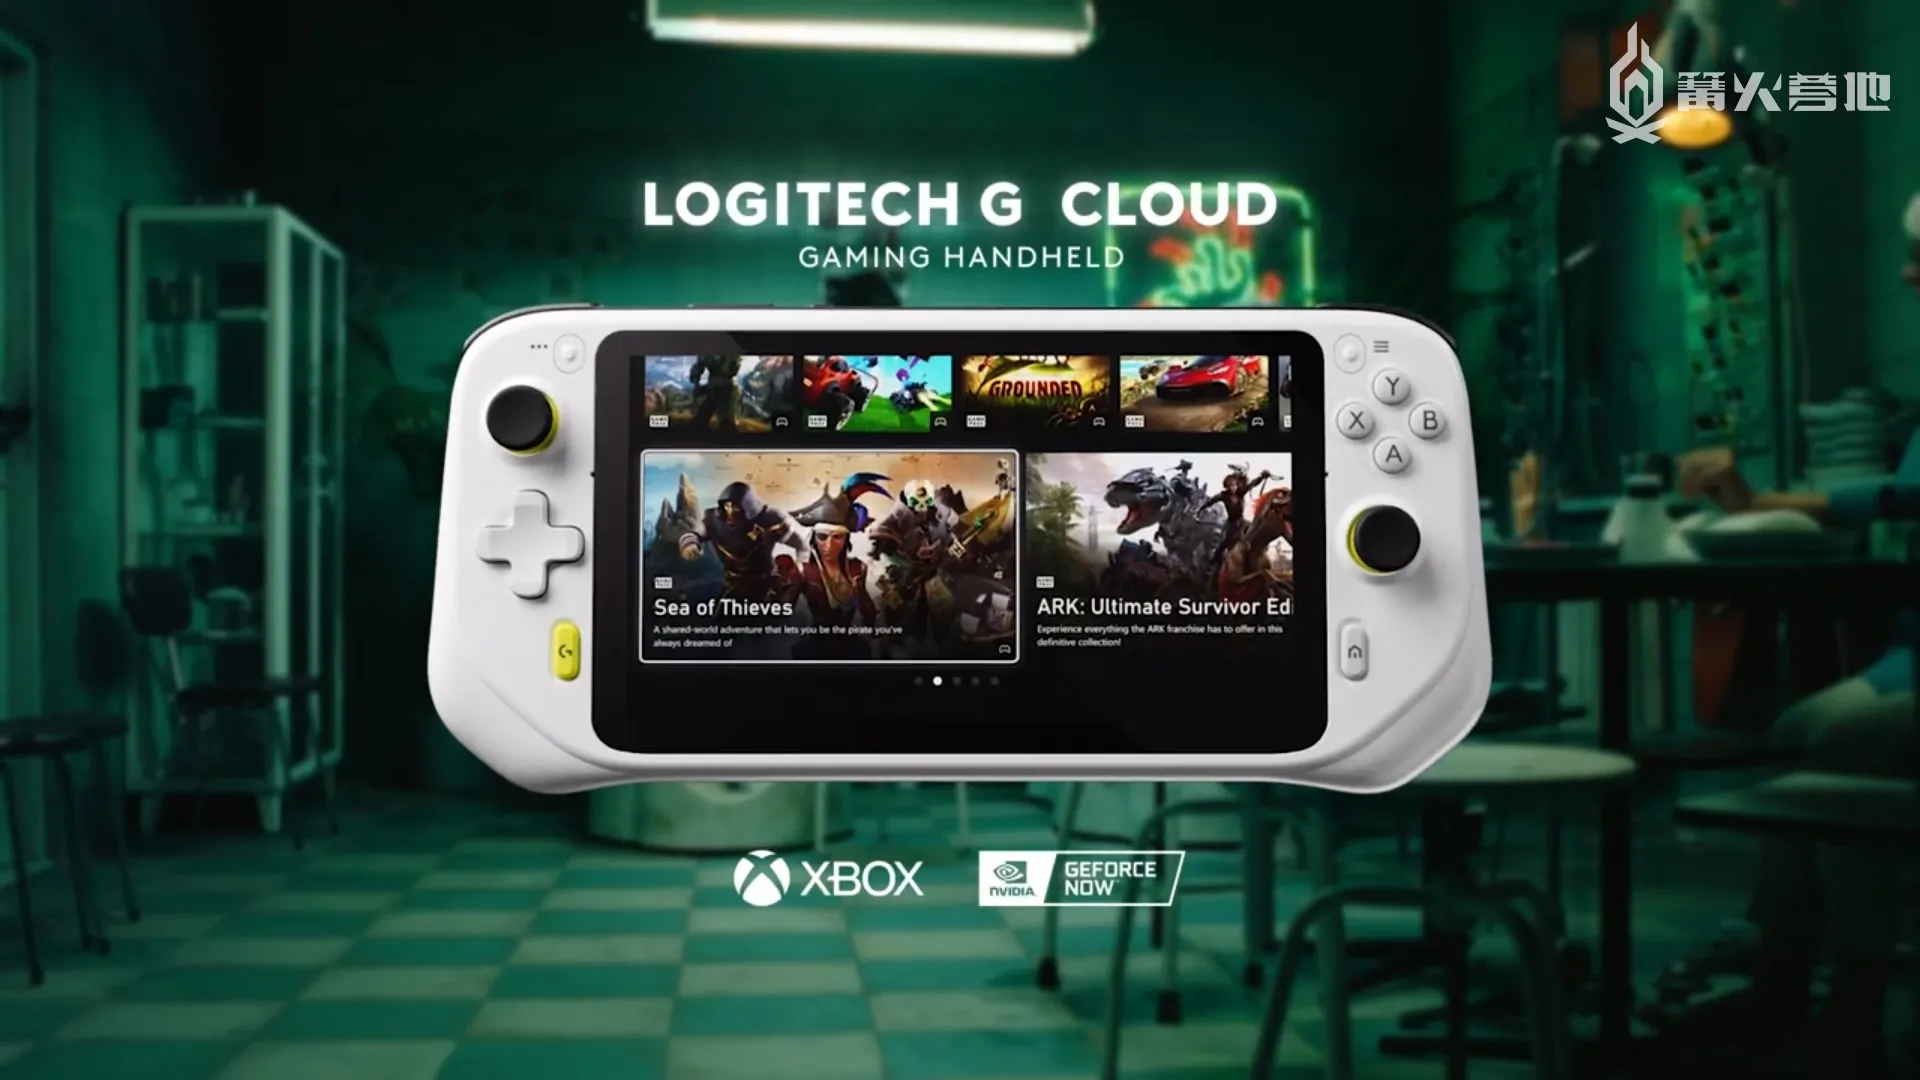 羅技 G Cloud 雲遊戲掌機 10 月中北美地區上市